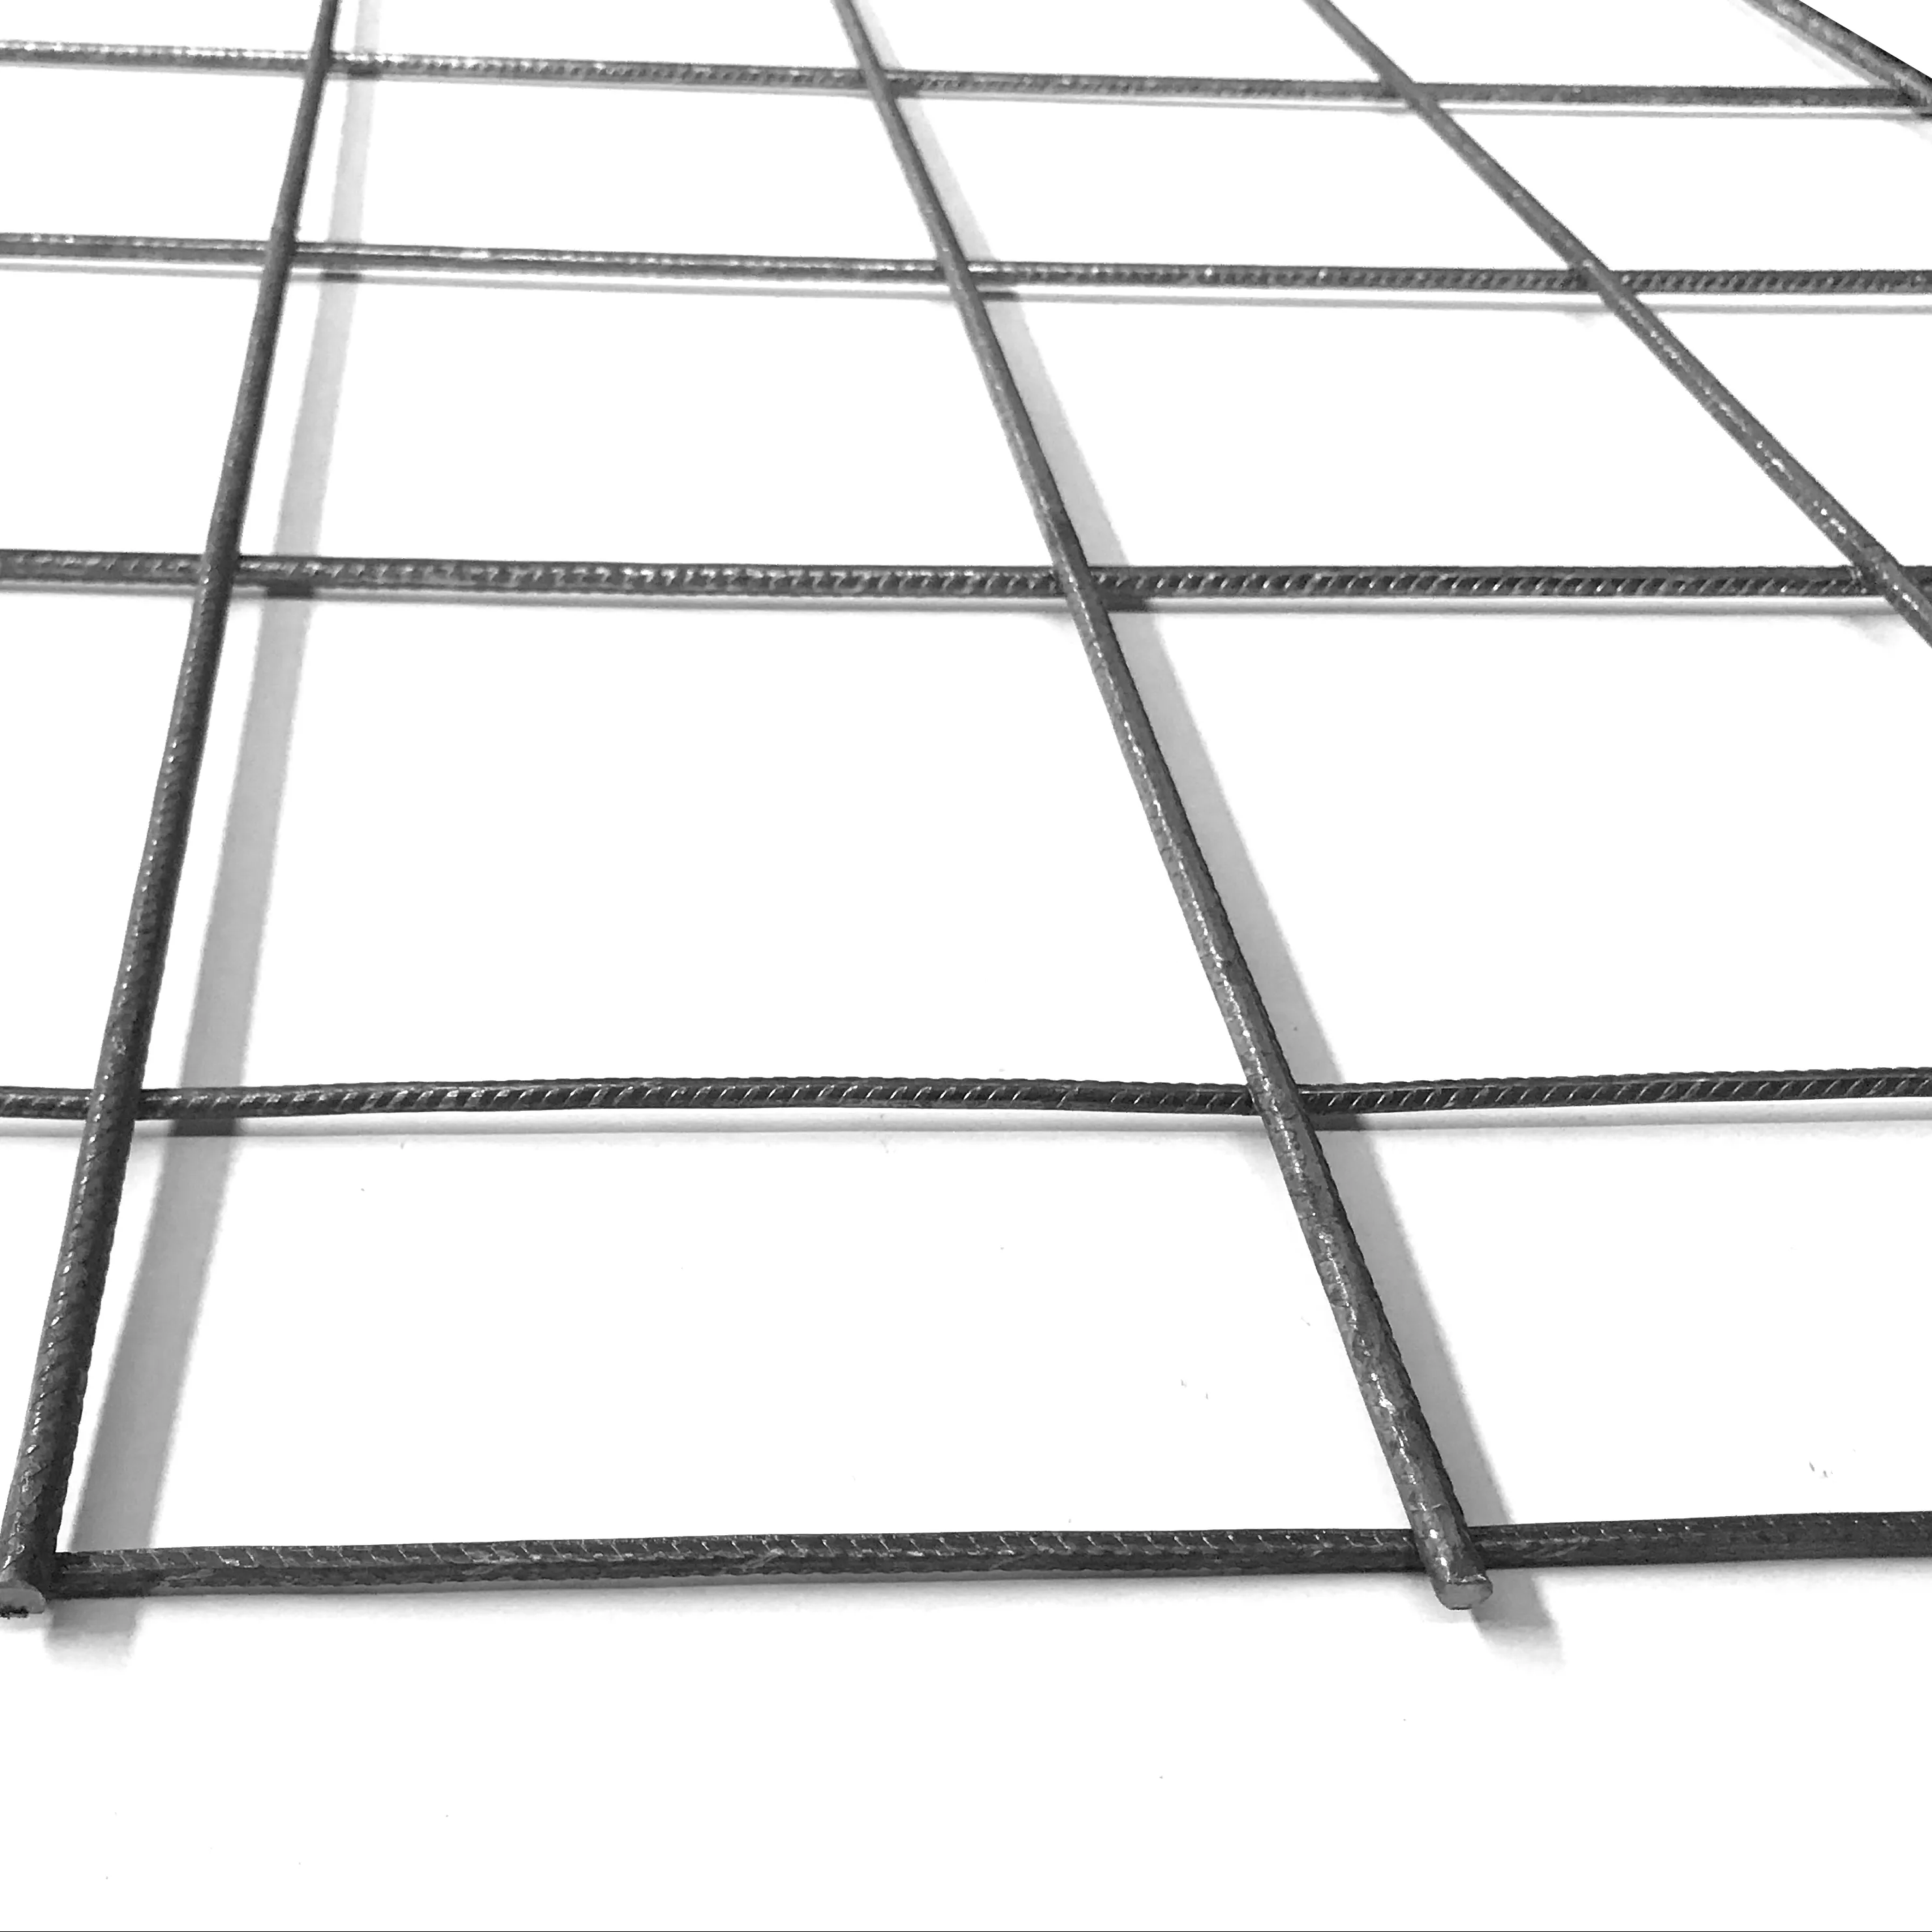 ריתוך מבנה לבניית גדר רשת פלדה מרותכת10 מד מרותך גדר רשת תיל